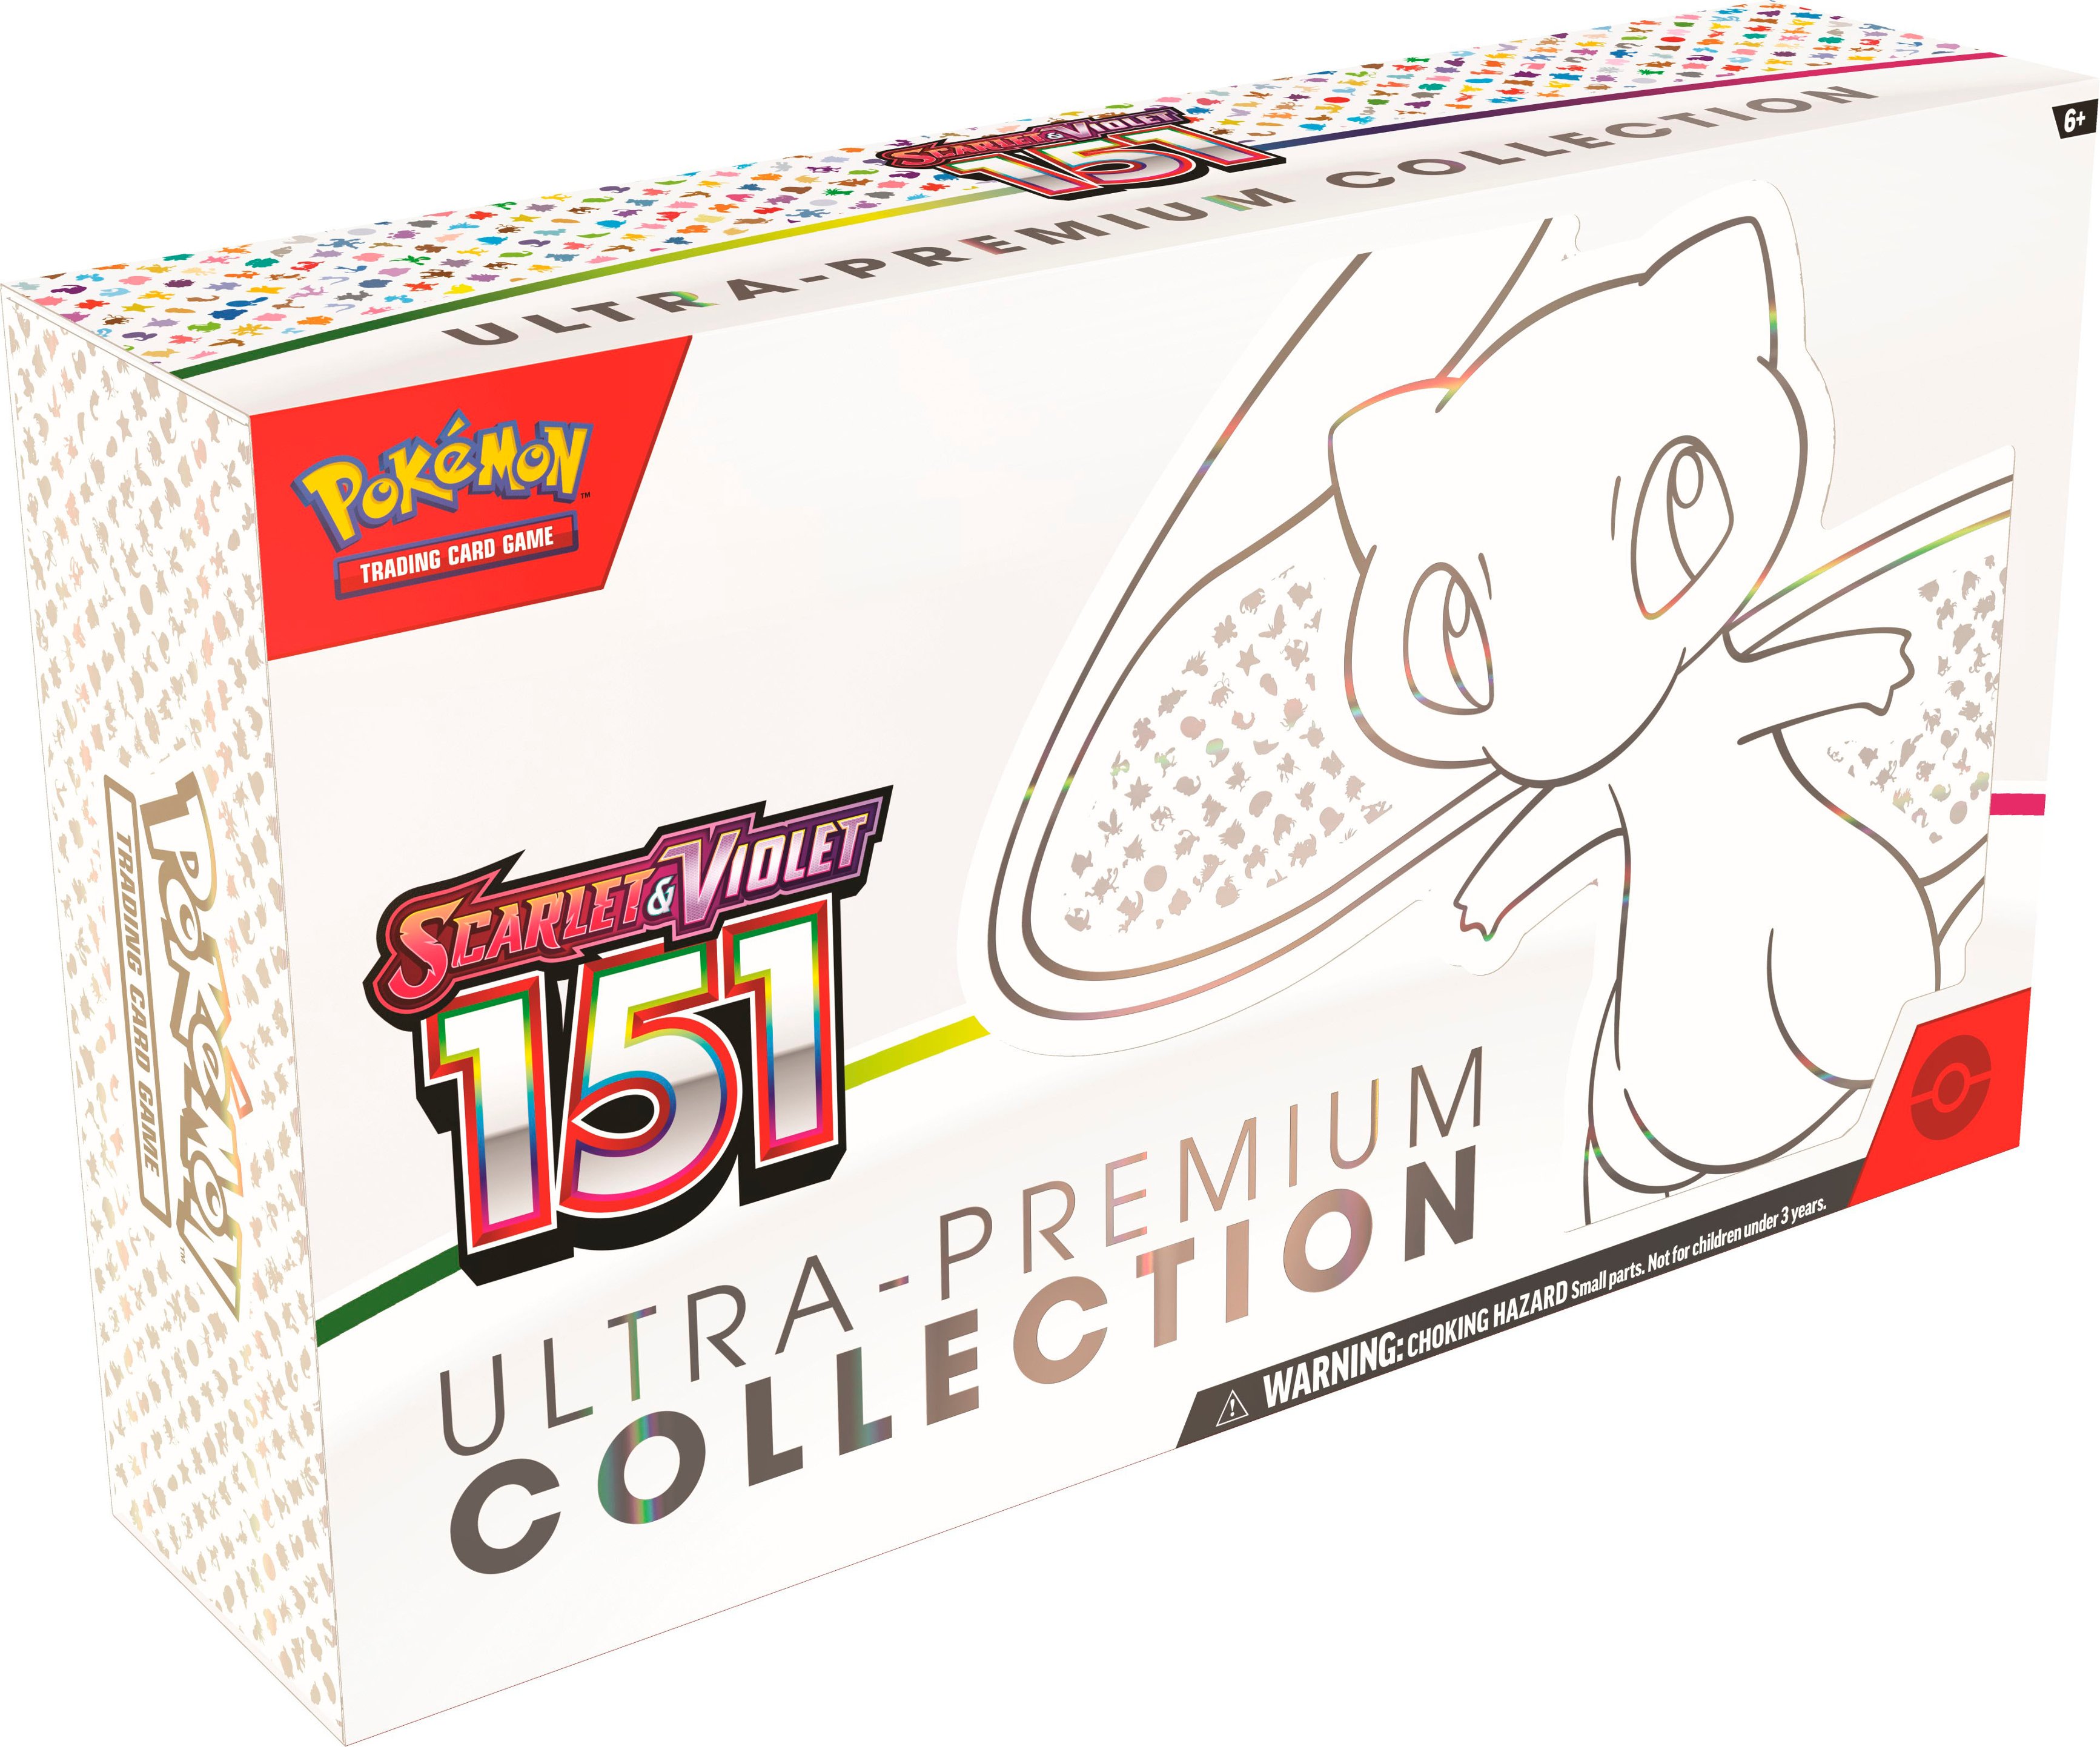 Pokemon 151 - Booster Box (20 Packs) [JAPANESE] – Obsidia Store